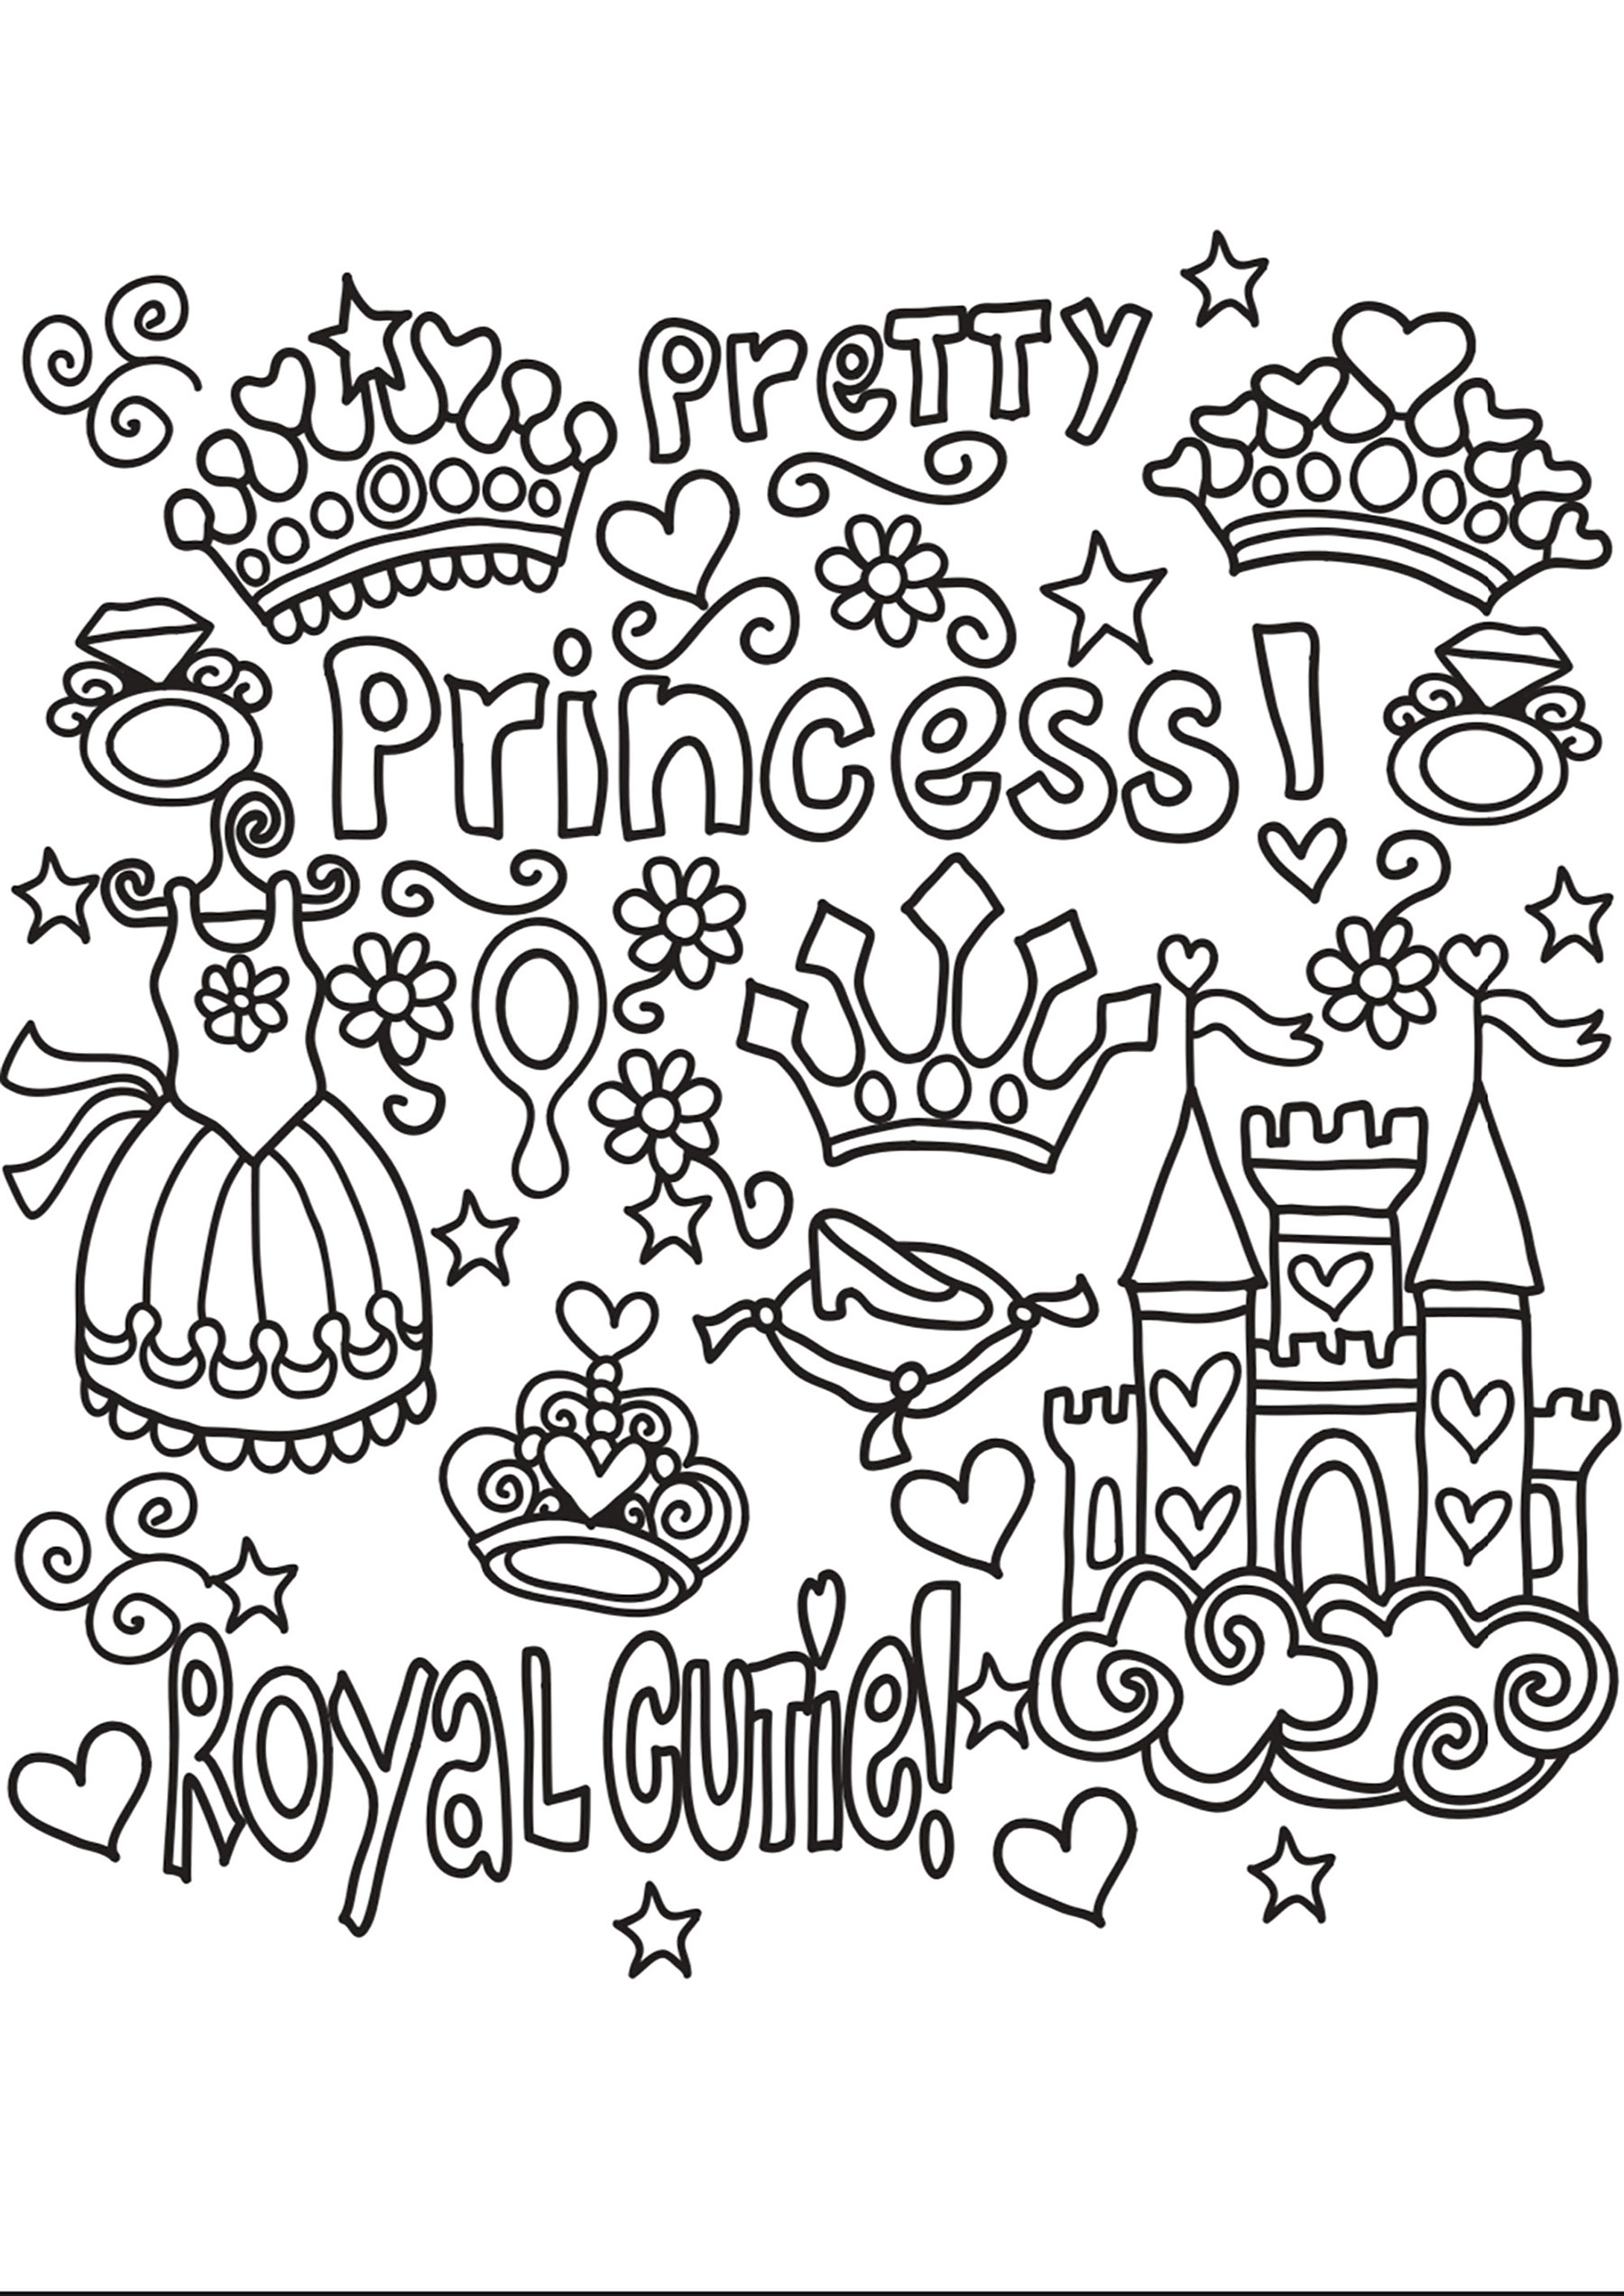 Doodle Princesse. Nombreux objets et textes liés aux princesses : château, robe, couronne ...